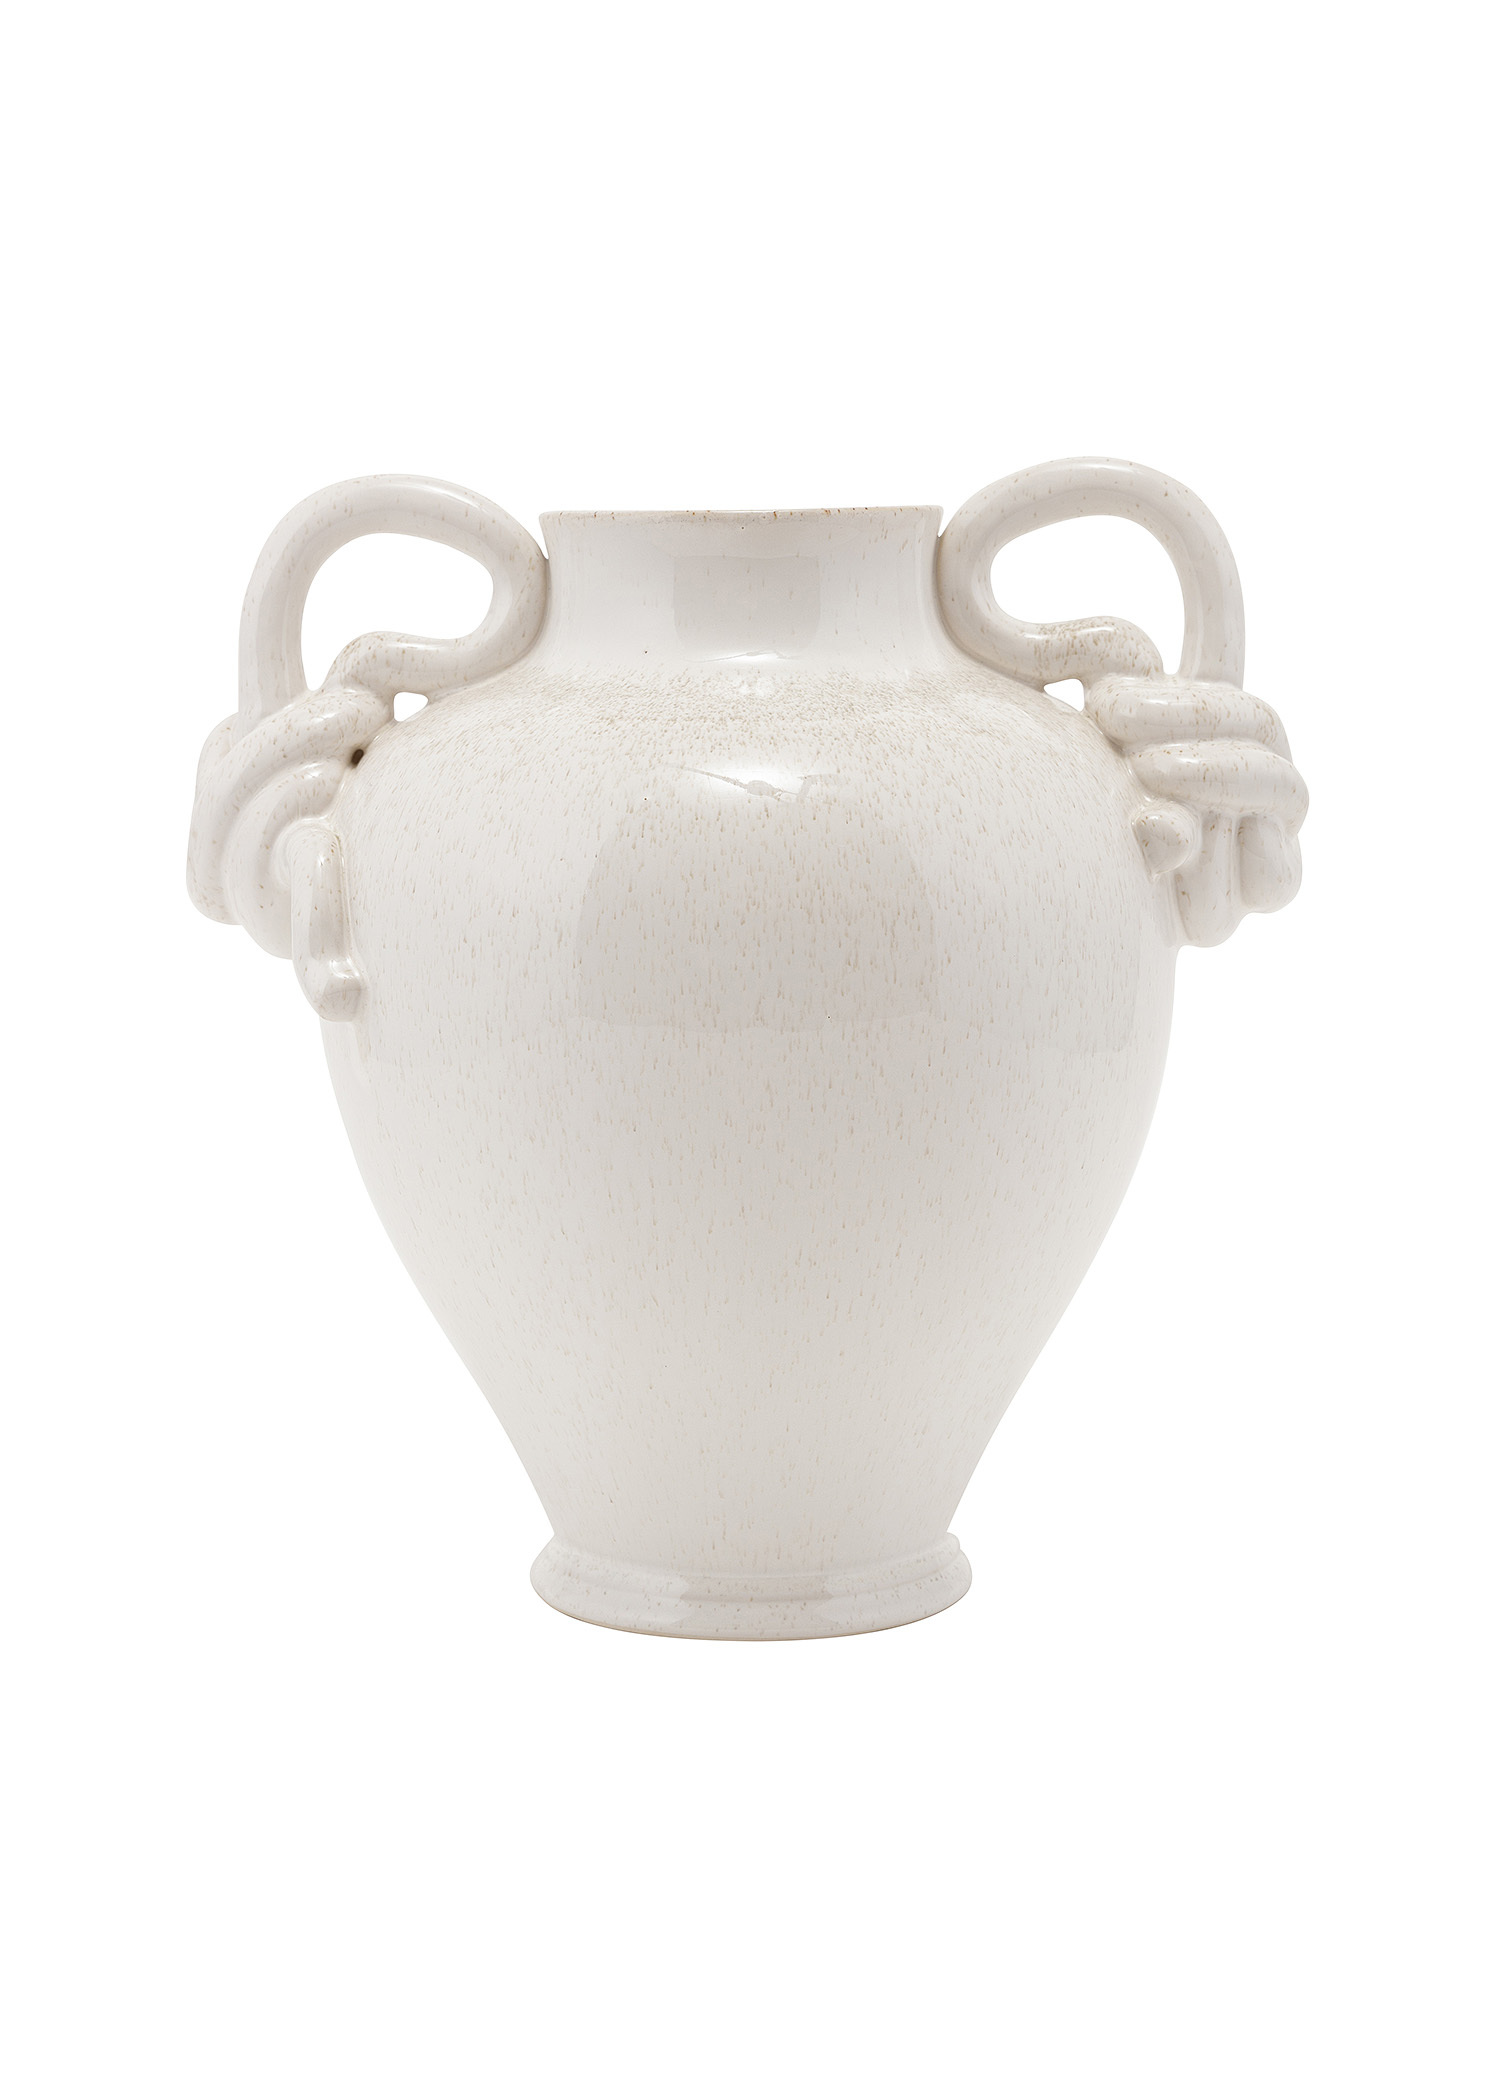 White stoneware vas Image 0